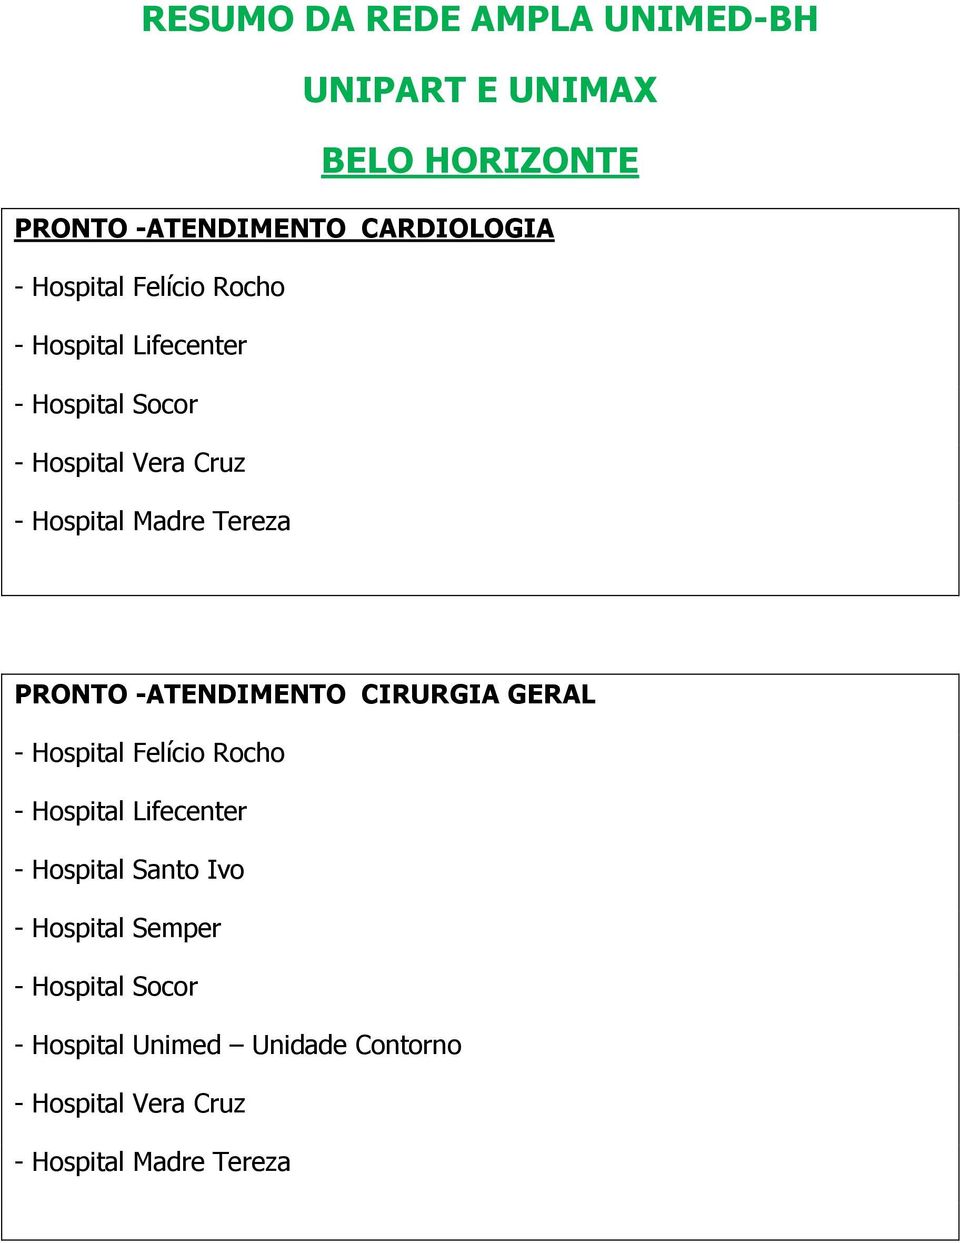 GERAL - Hospital Felício Rocho - Hospital Lifecenter - Hospital Santo Ivo - Hospital Semper -